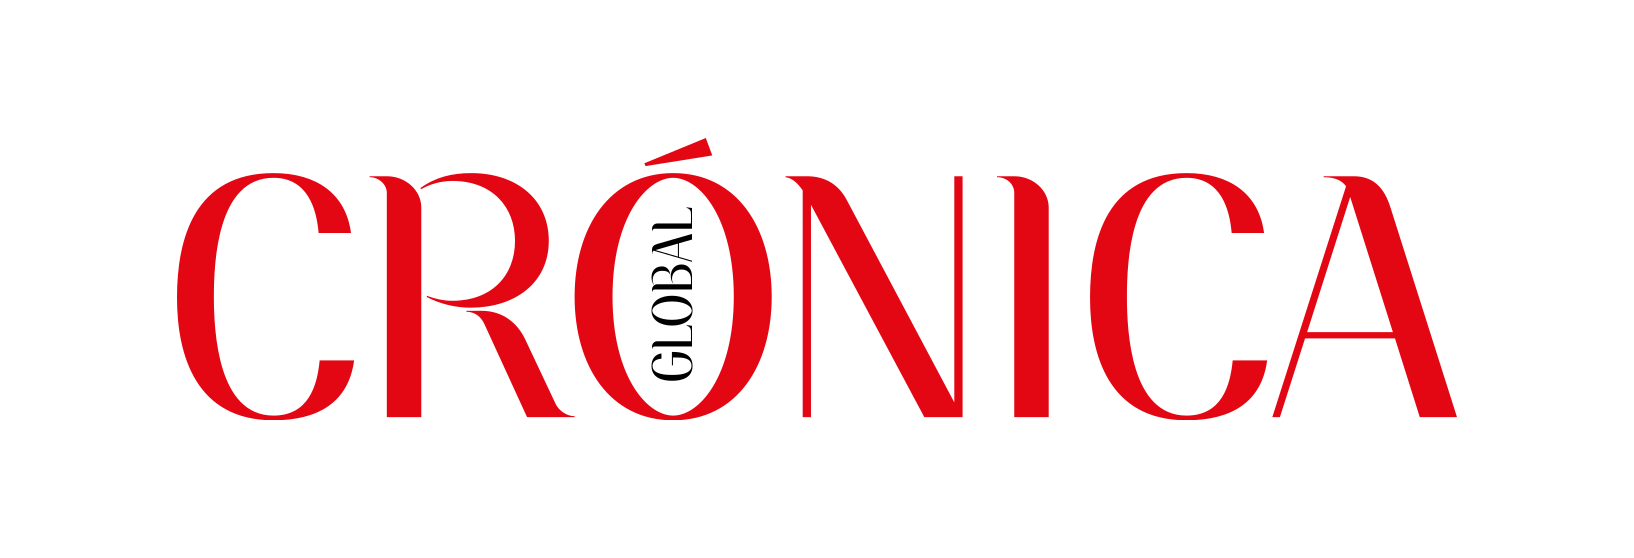 Cronica Global